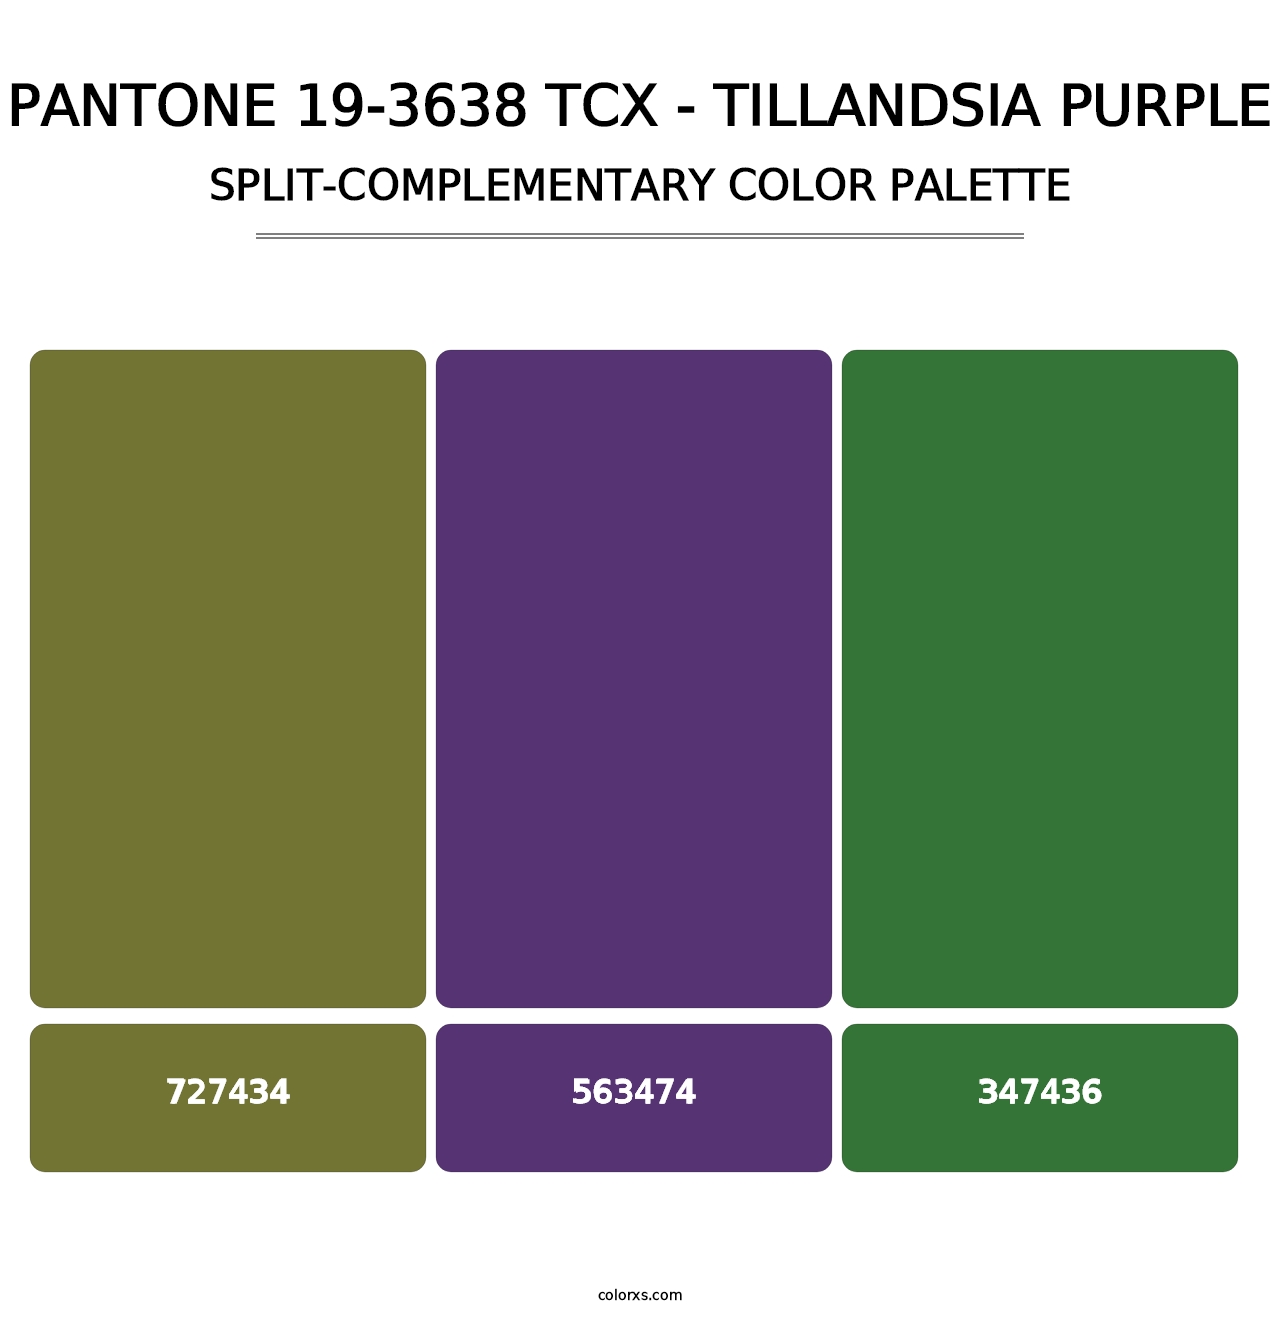 PANTONE 19-3638 TCX - Tillandsia Purple - Split-Complementary Color Palette